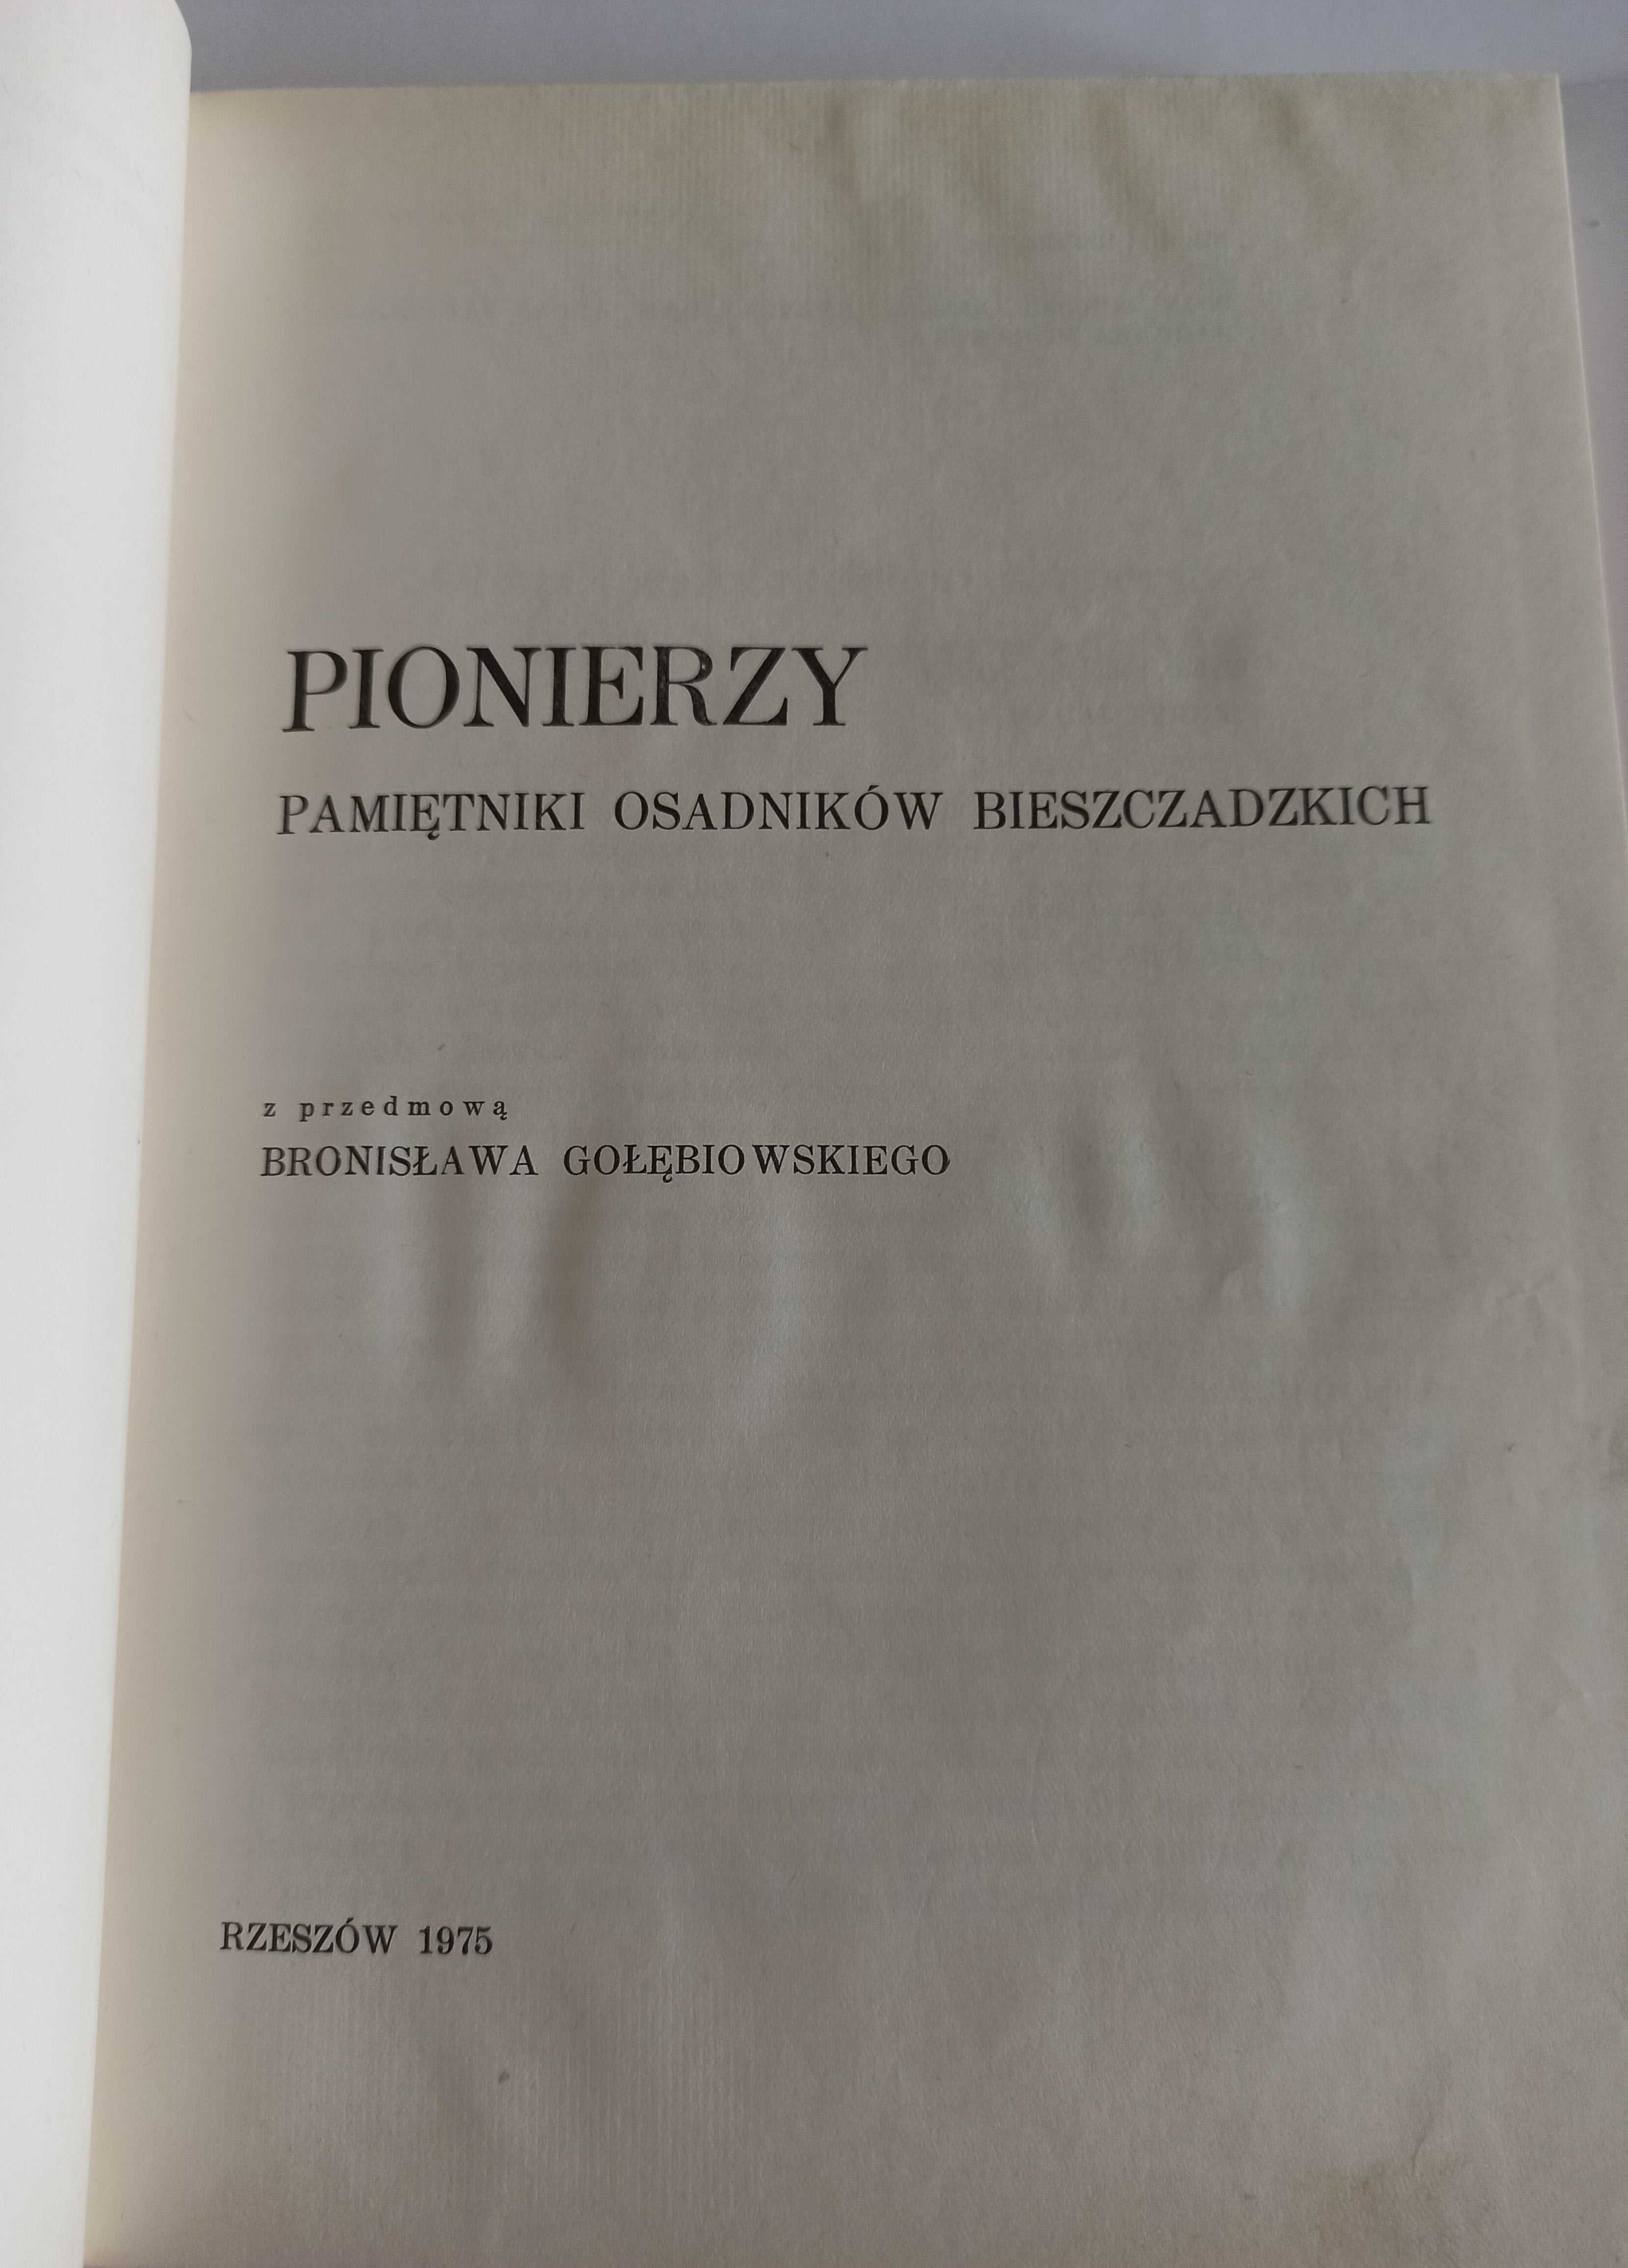 Pionierzy - Pamiętniki osadników bieszczadzkich Bronisław Gołębiowski